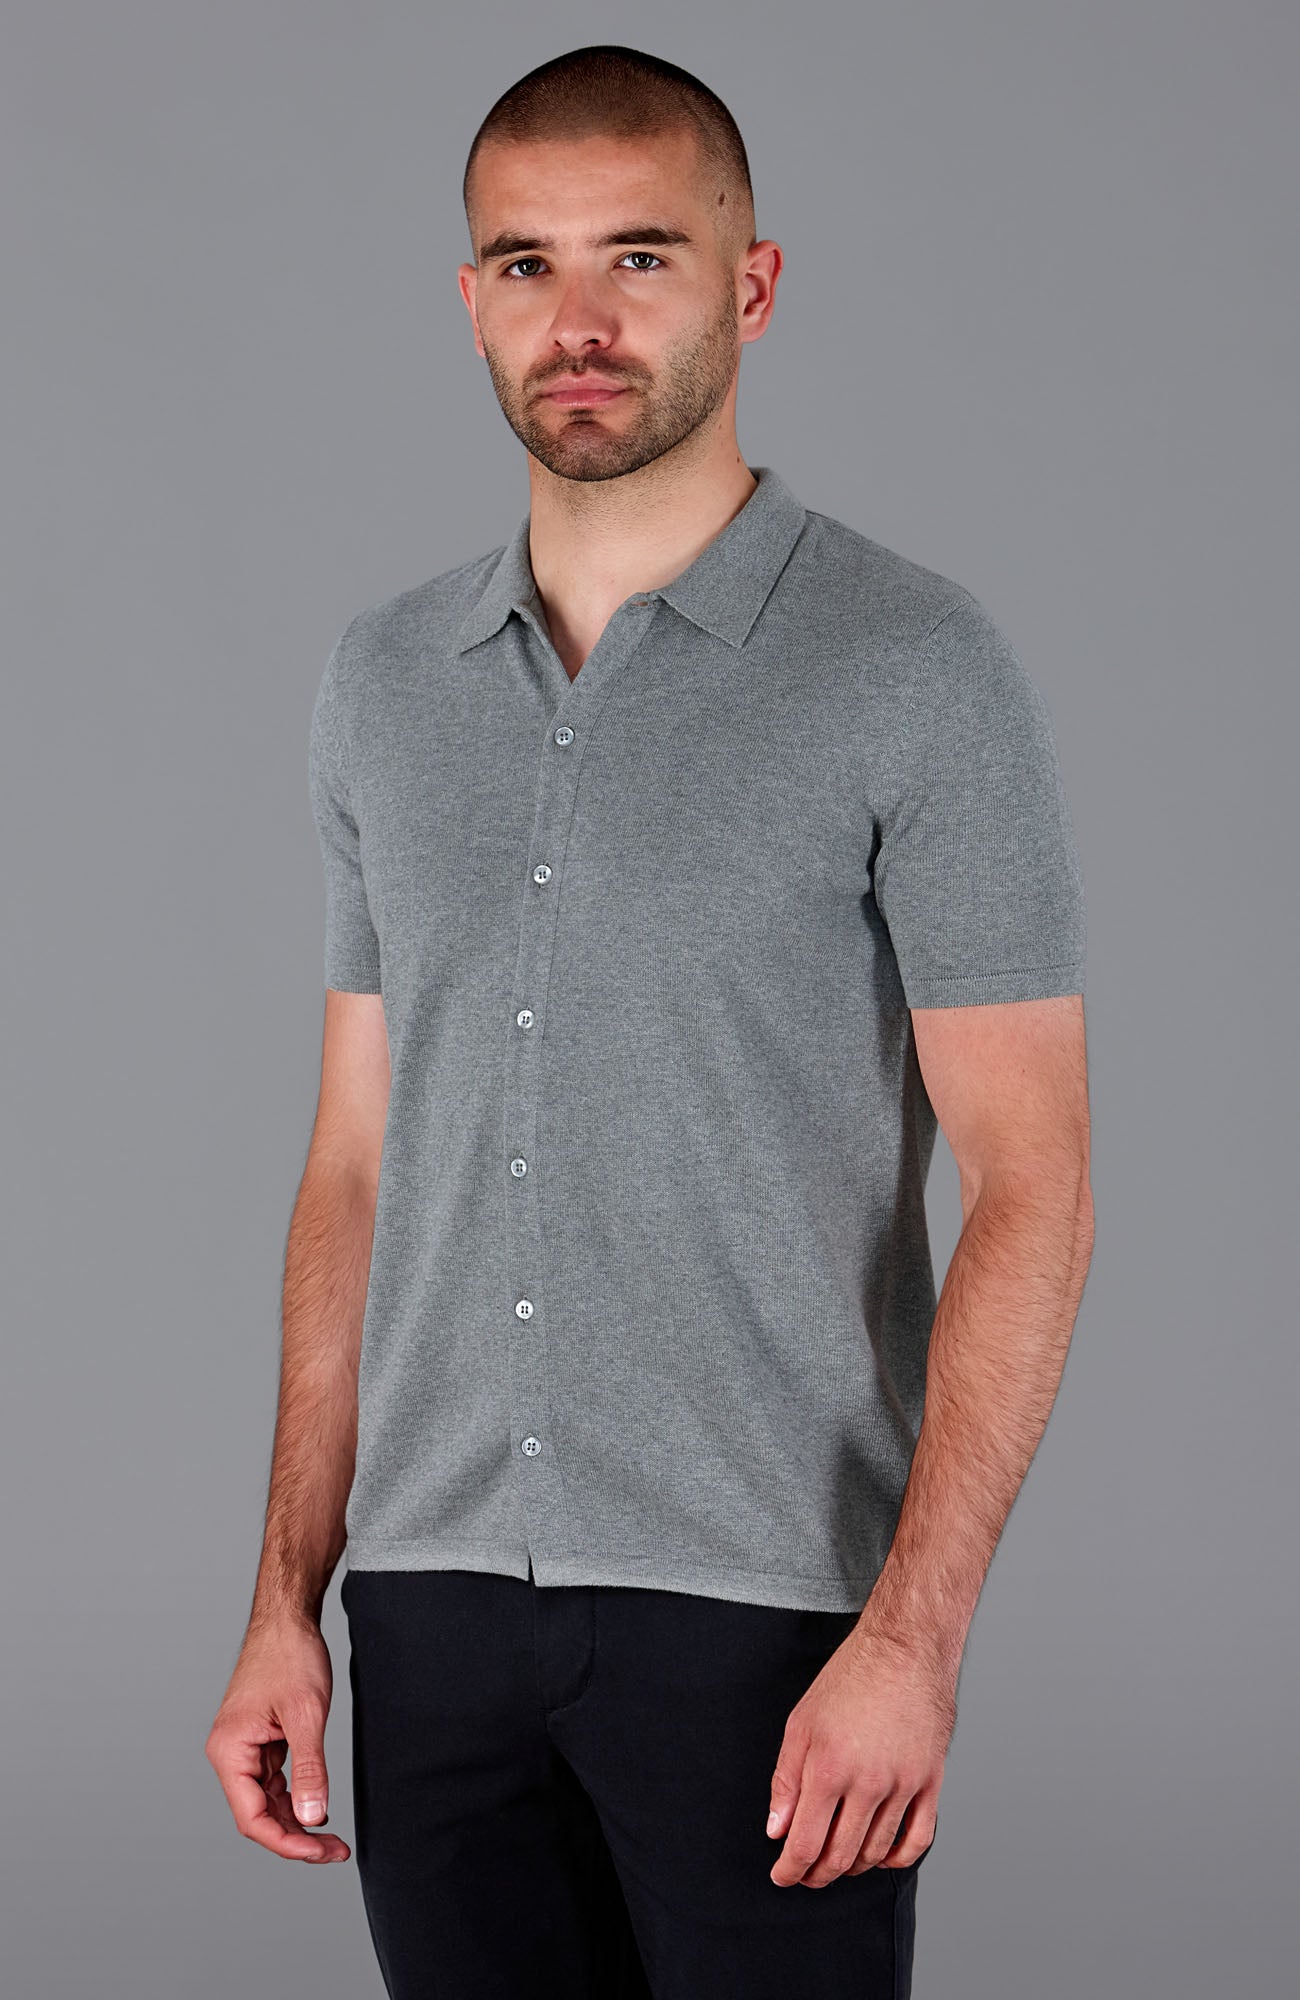 Mens Lightweight Cotton Short Sleeve Shirt